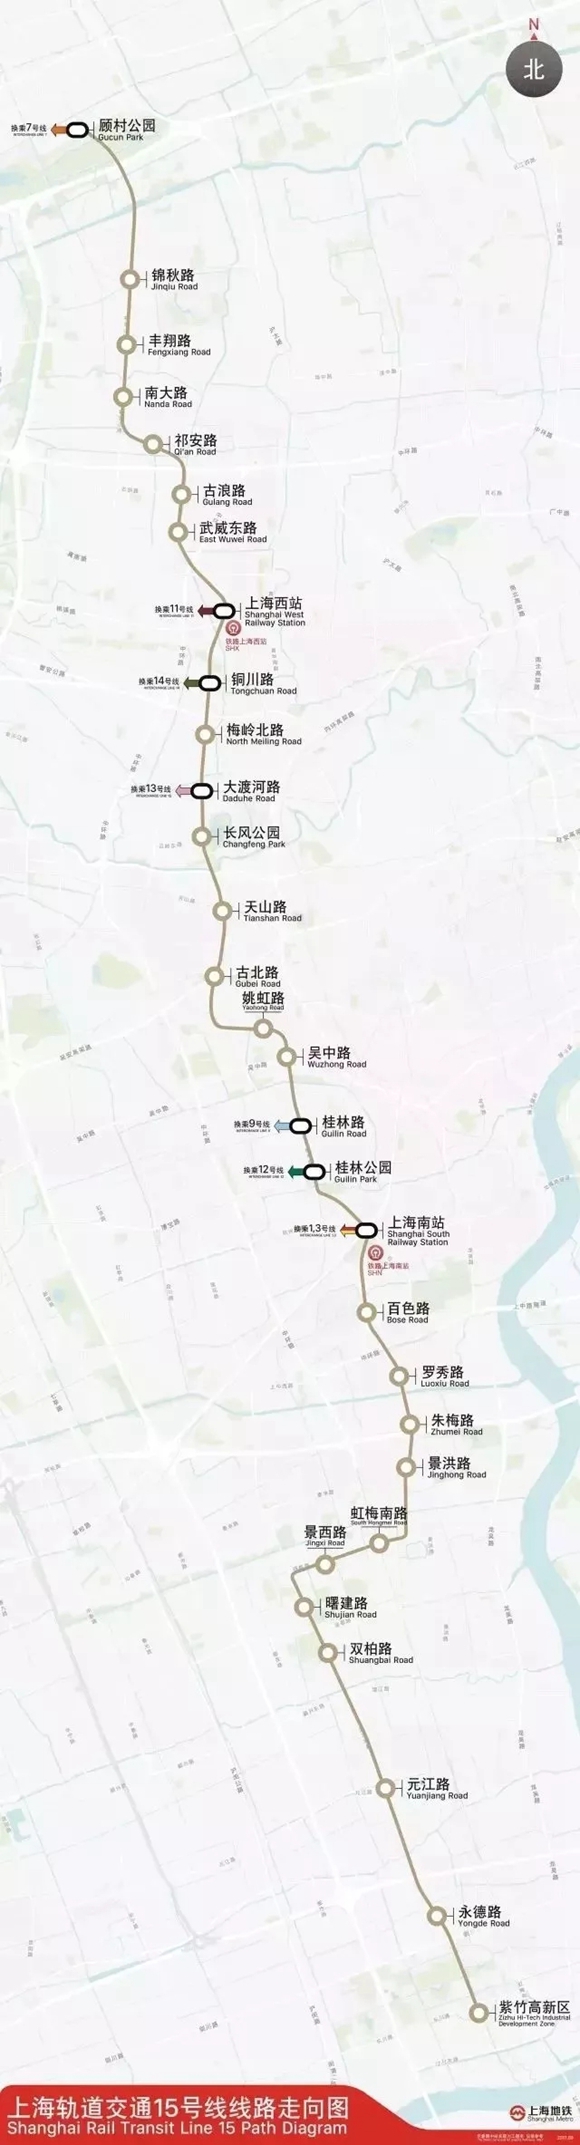 上海轨交15号线首座车站主体结构封顶 未来将纵贯5个区